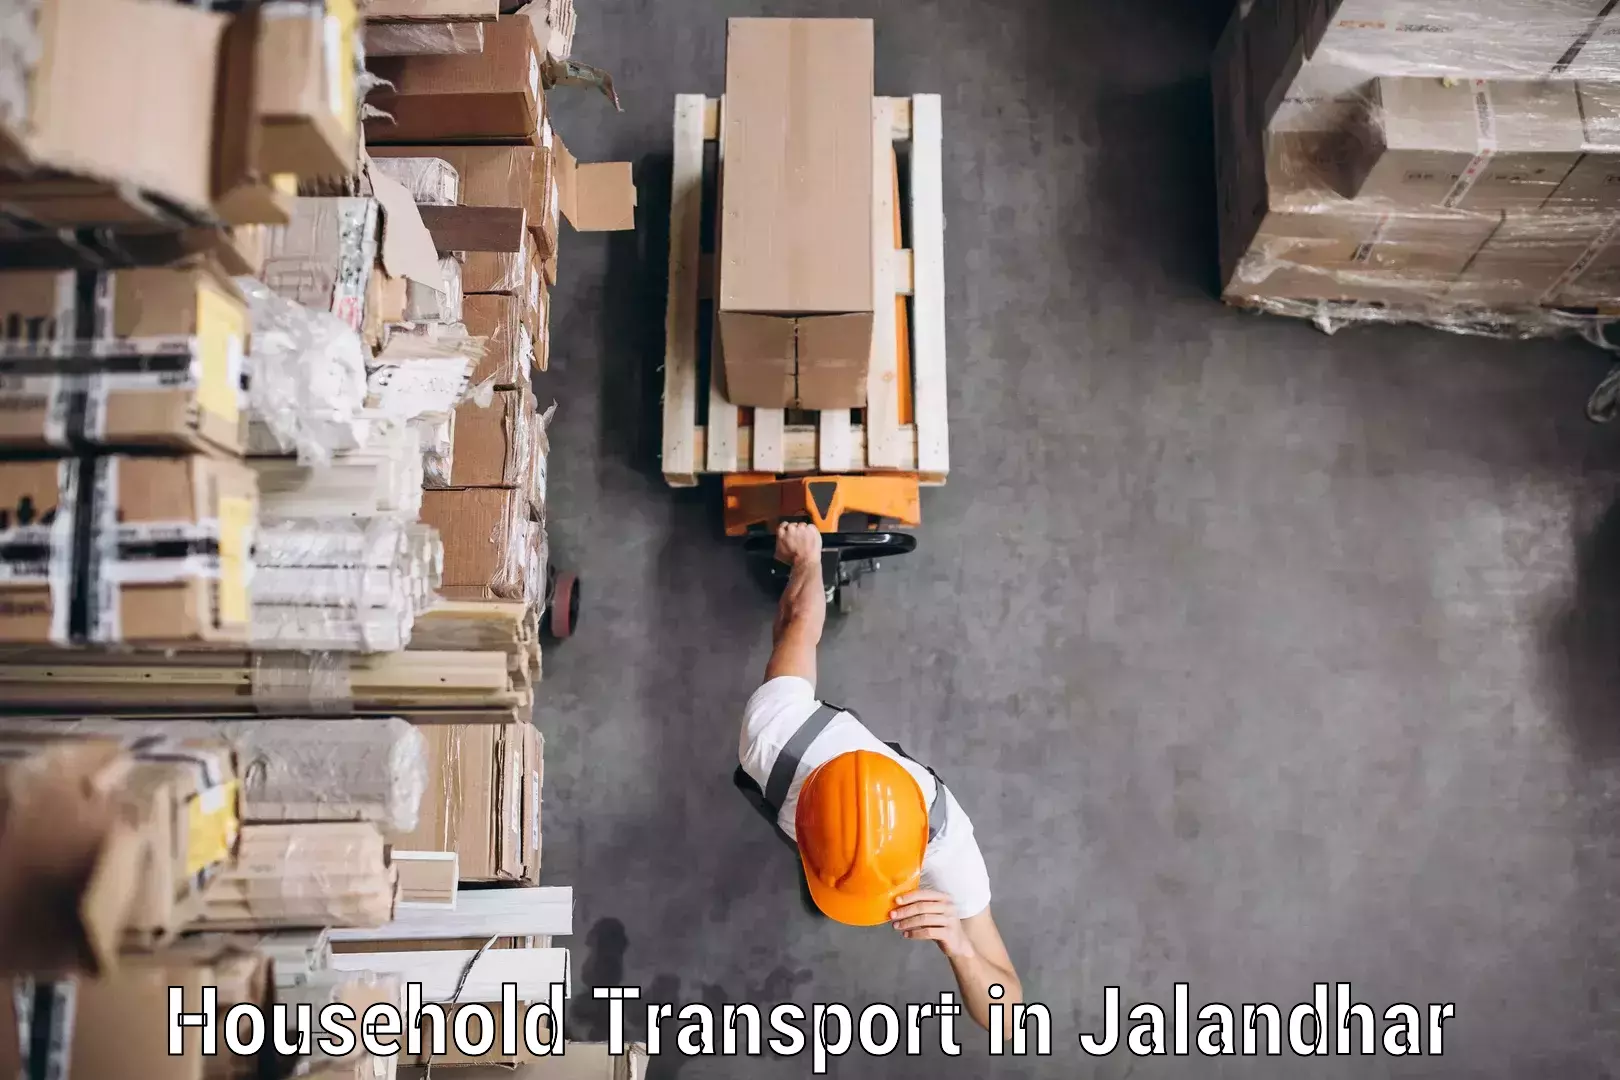 Furniture delivery service in Jalandhar